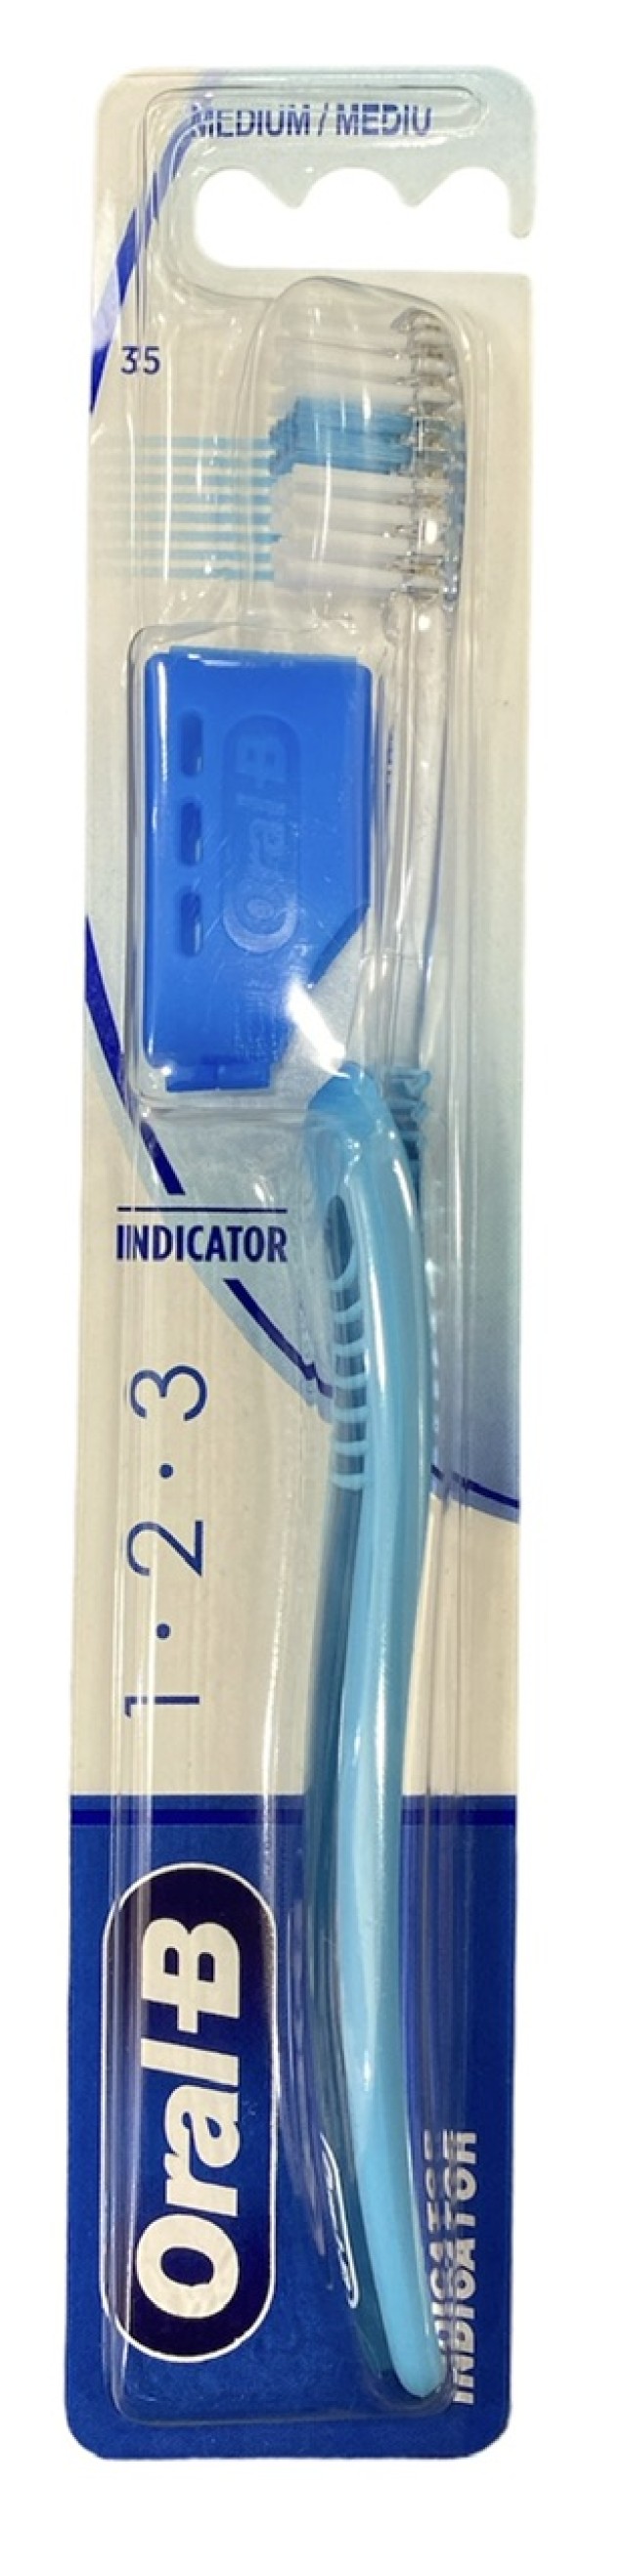 Oral-B Οδοντόβουρτσα Μέτρια Indicator 1-2-3 35mm Χρώμα Γαλάζιο, 1τμχ